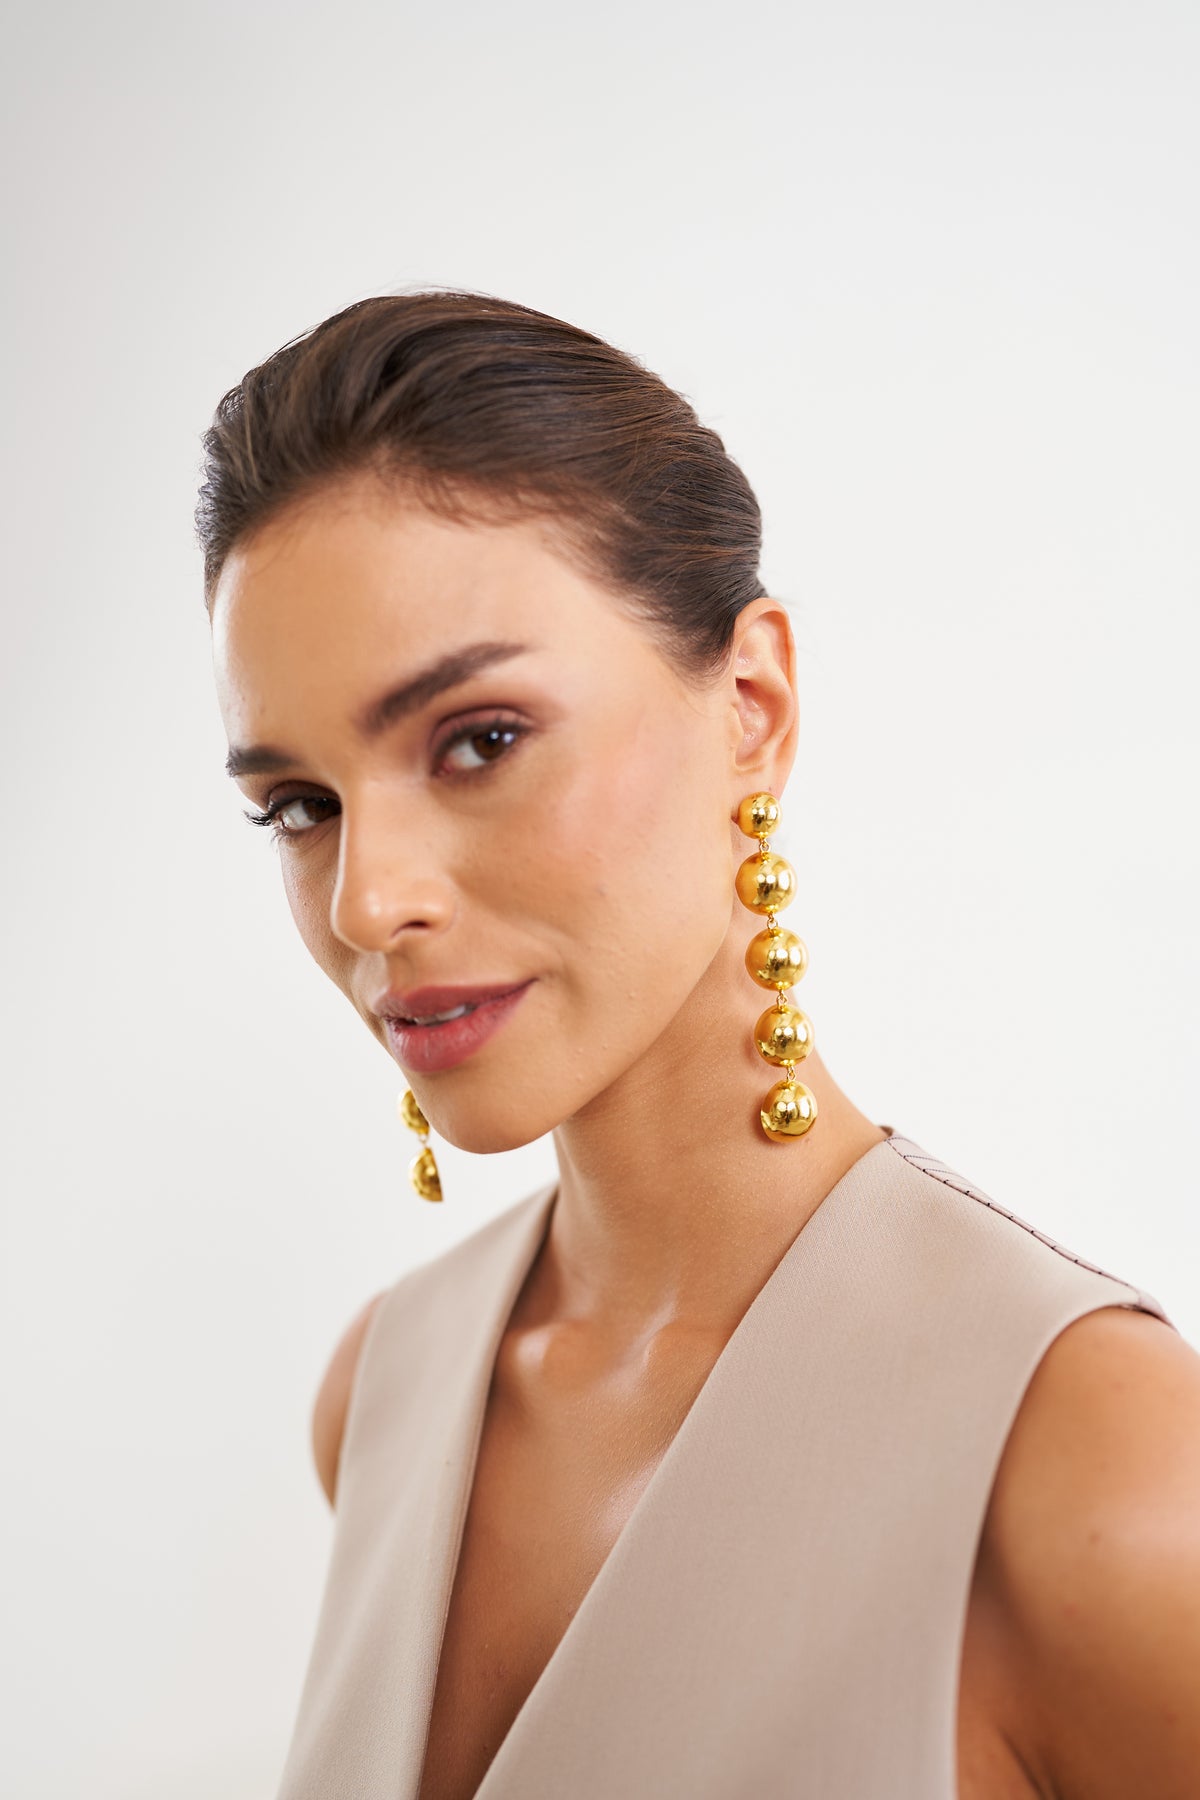 Gold Gloss Earrings